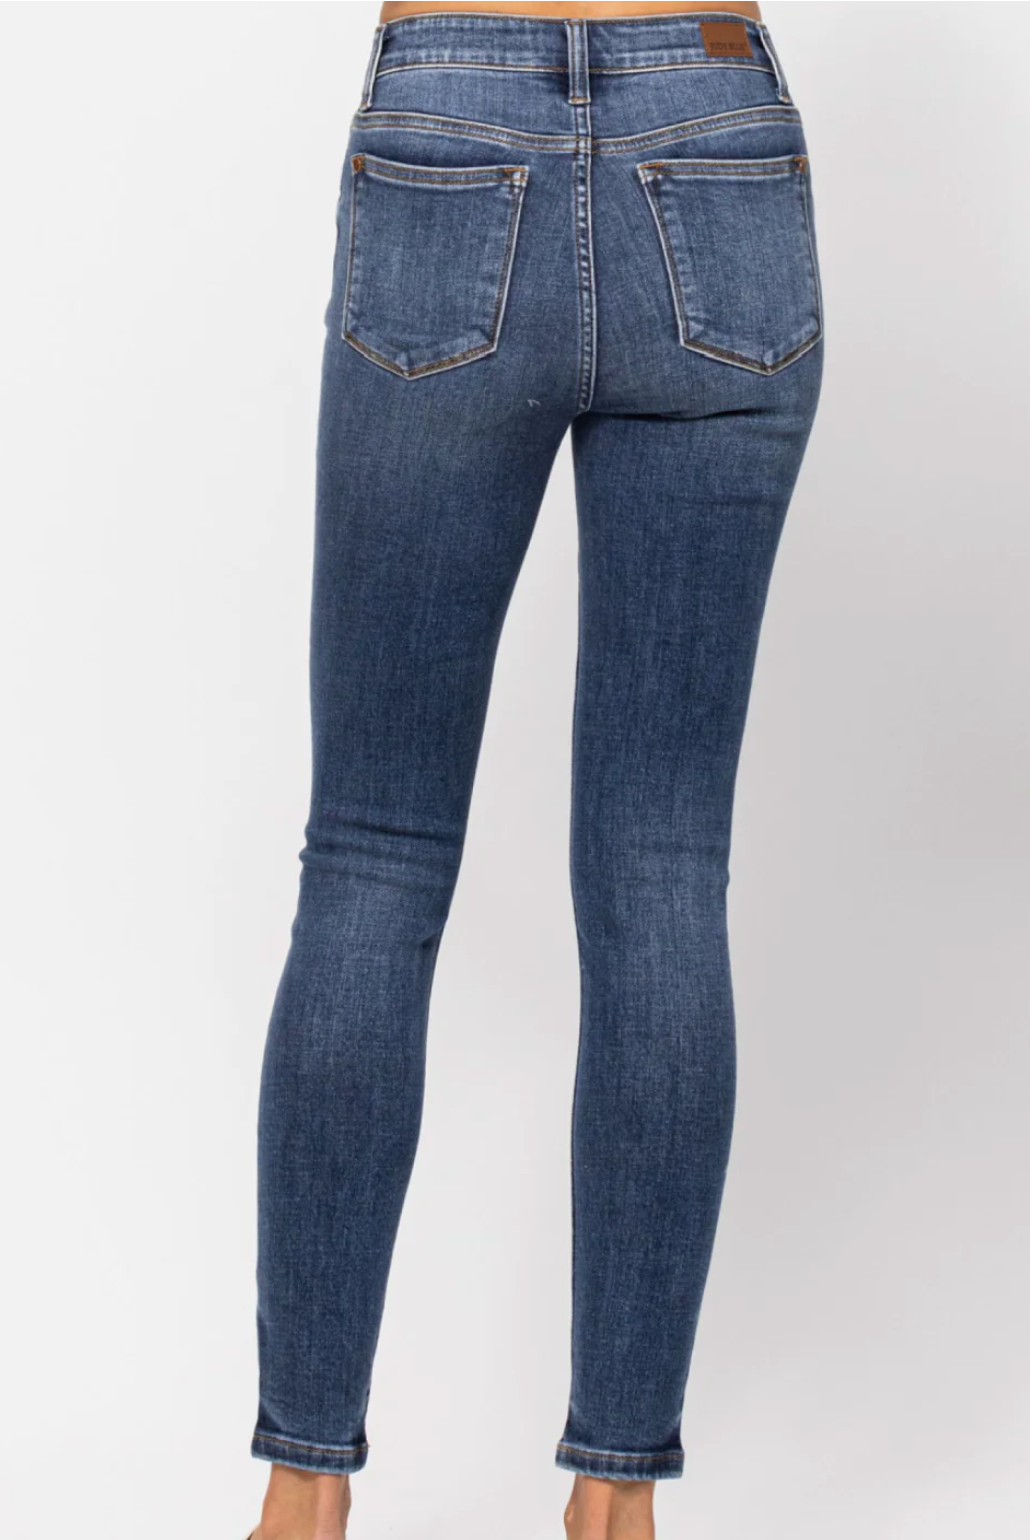 Danita Mid Rise Skinny Jeans